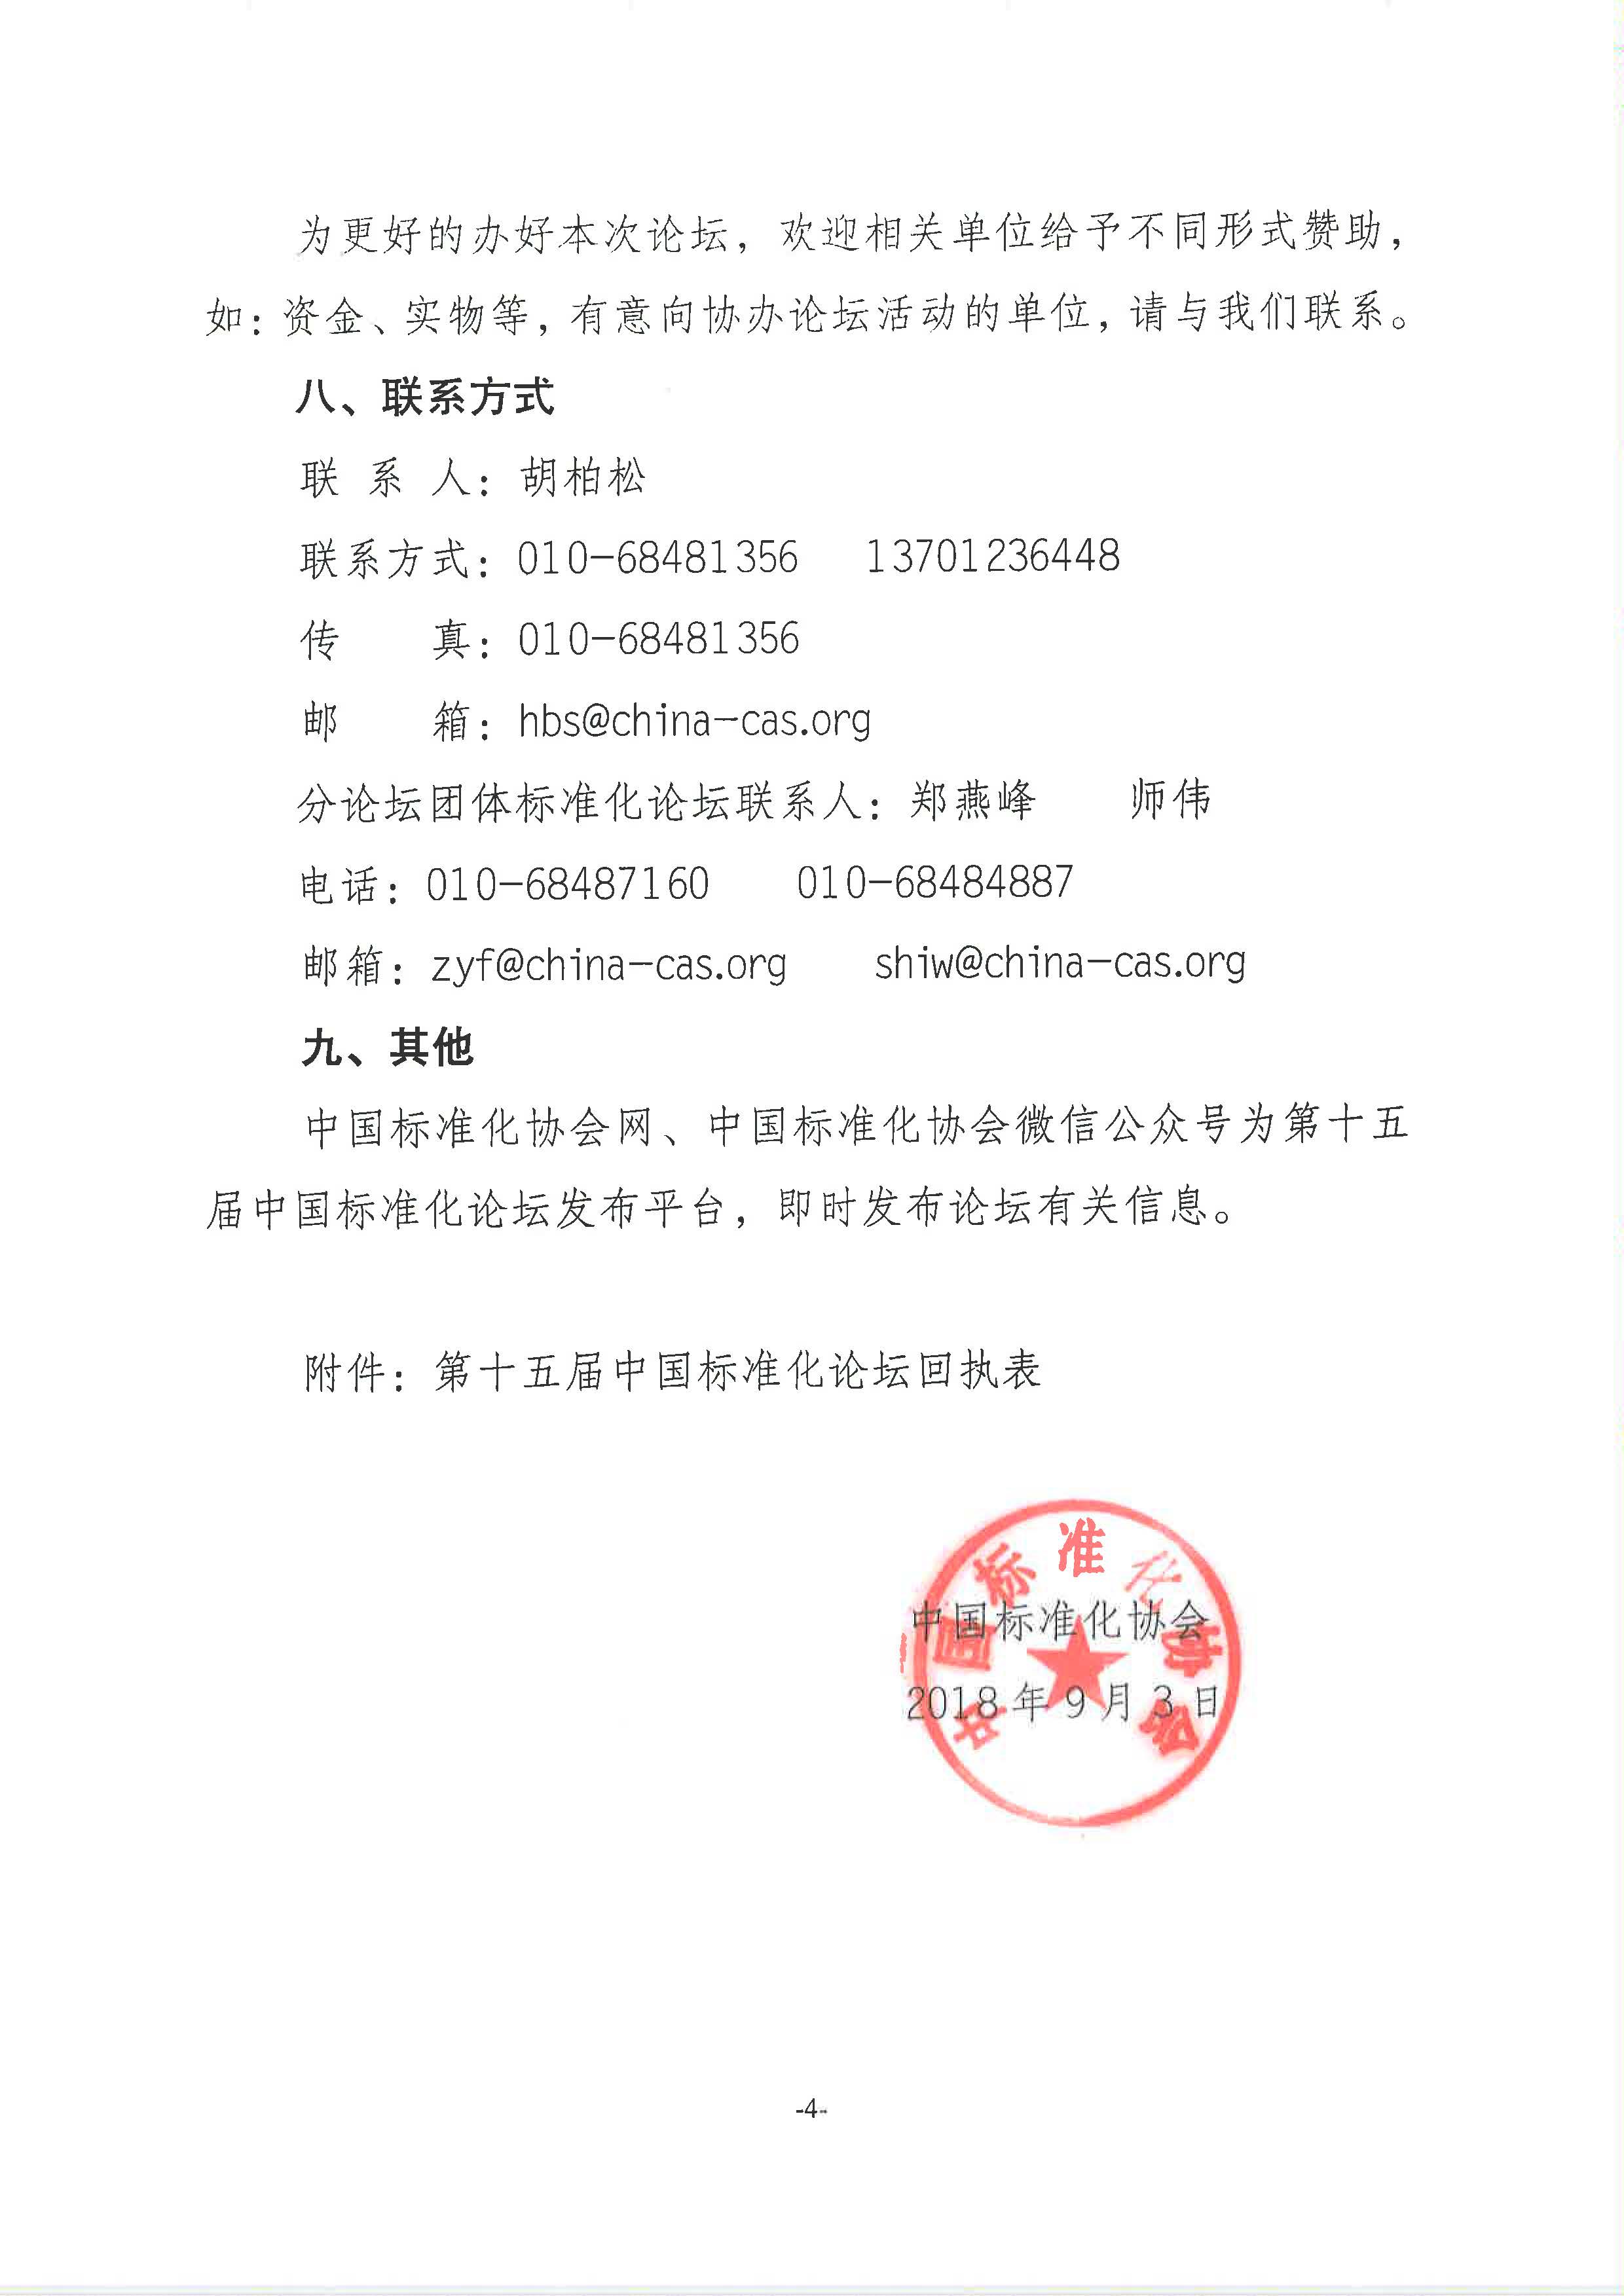 附件1：关于举办“第十五届中国标准化论坛”的通知2018-225_页面_4.jpg